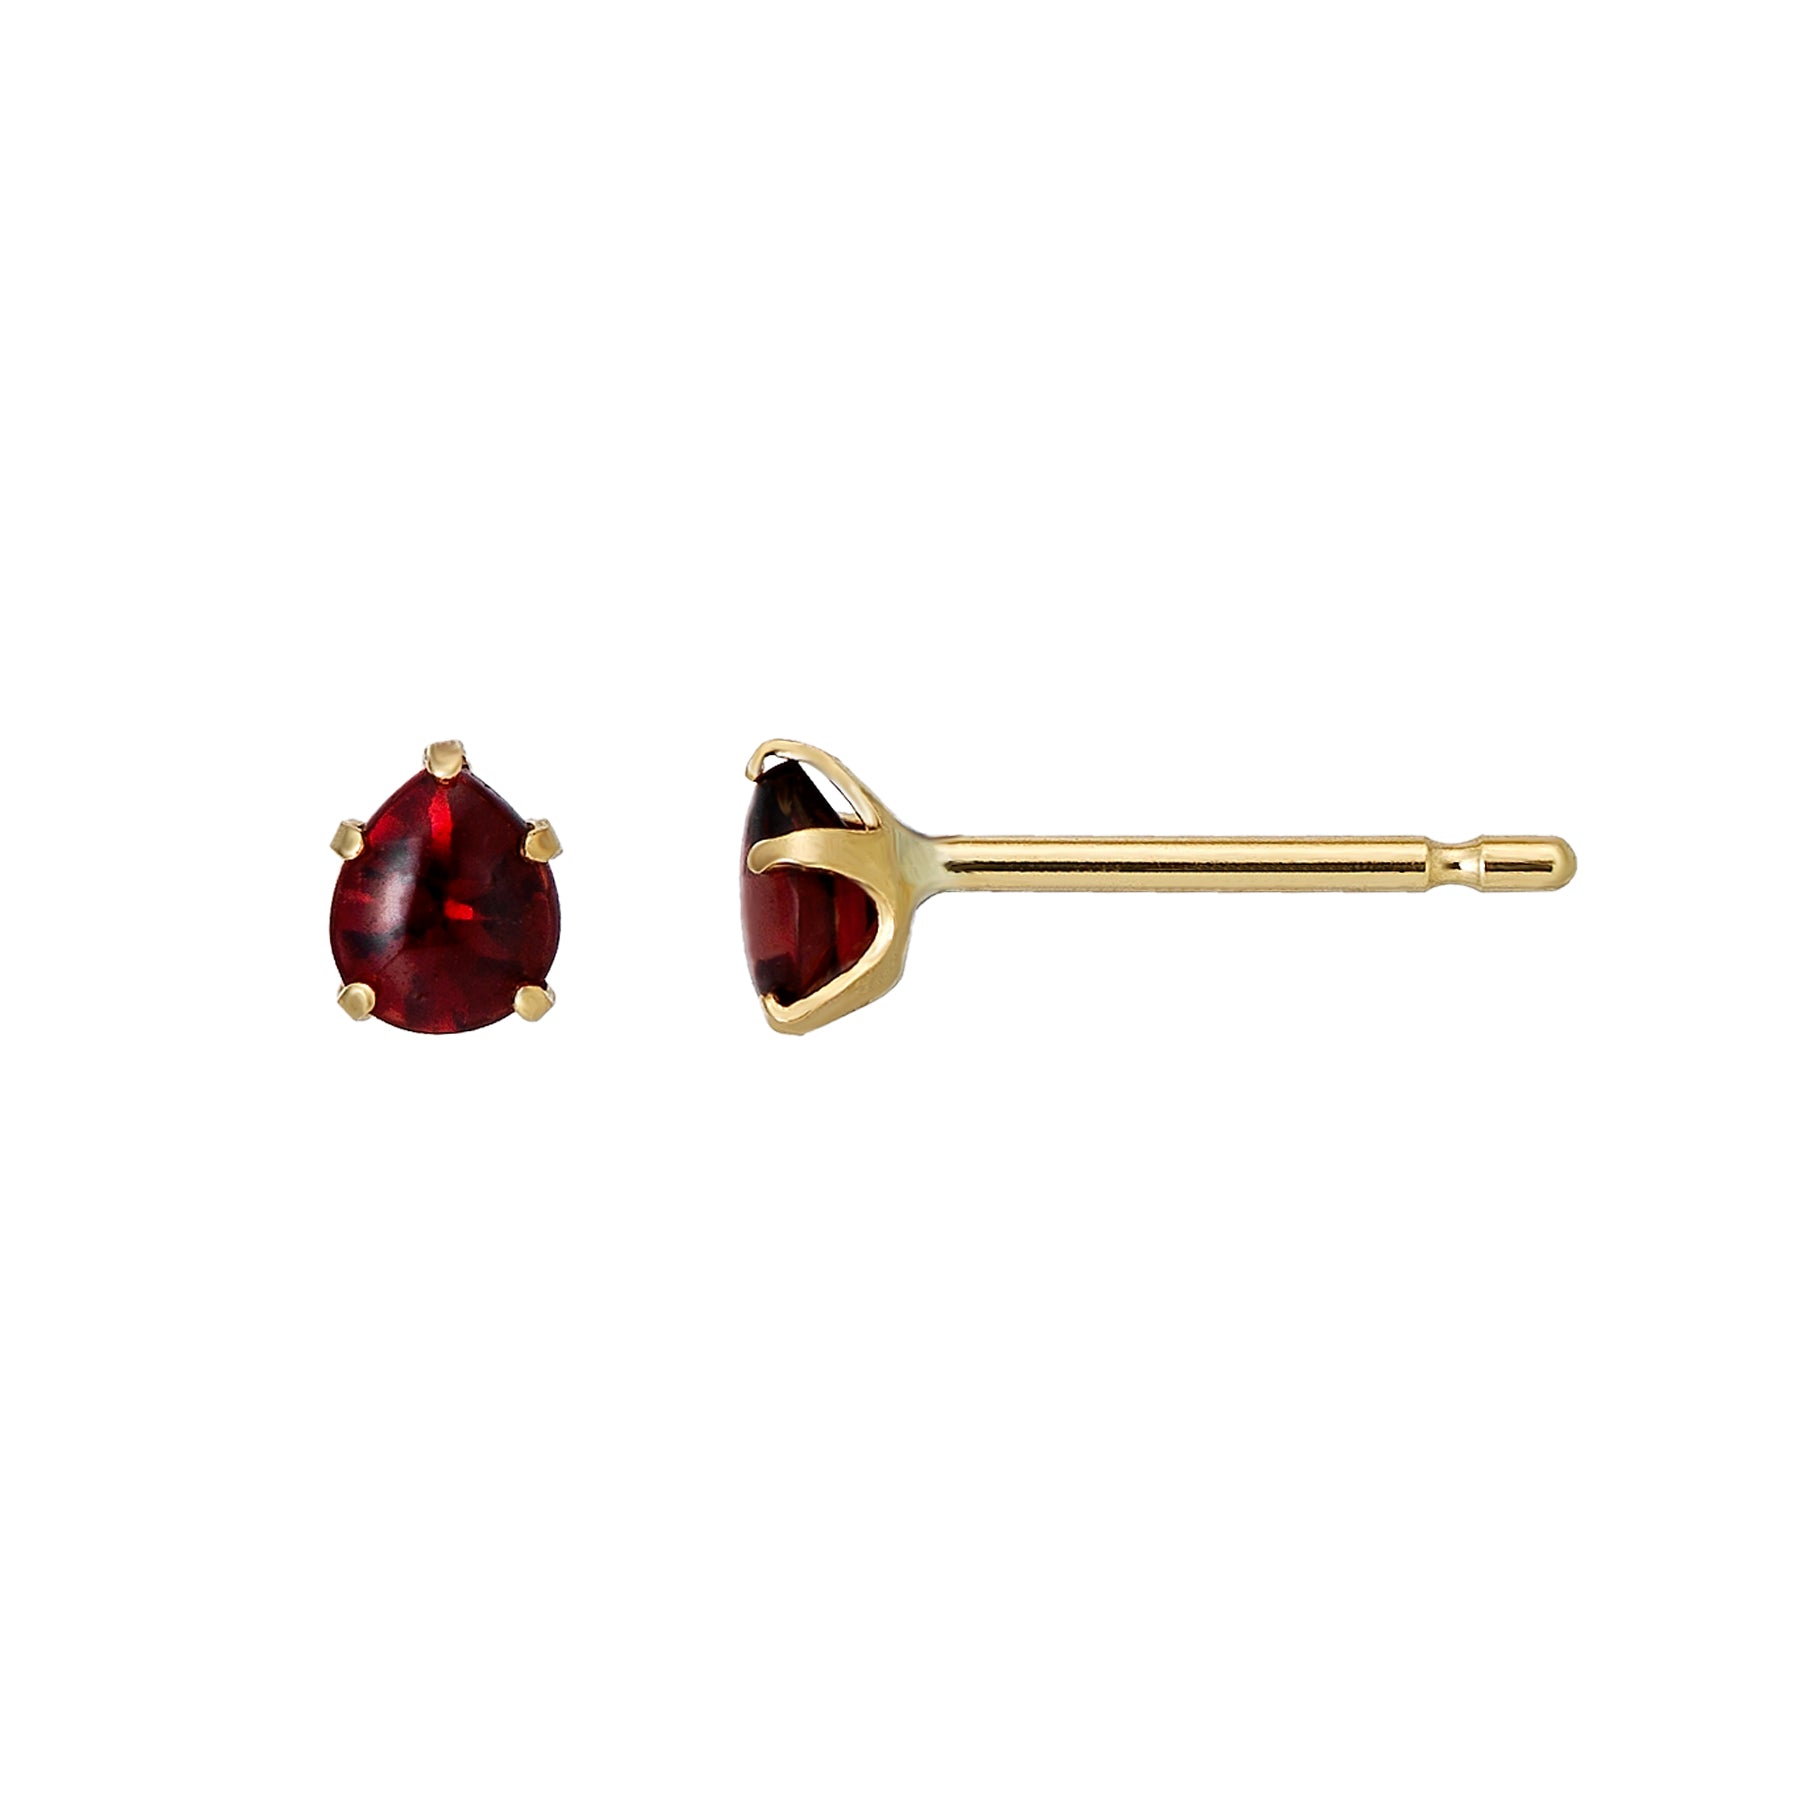 [Second Earrings] 18K Yellow Gold Garnet Drop Earrings - Product Image